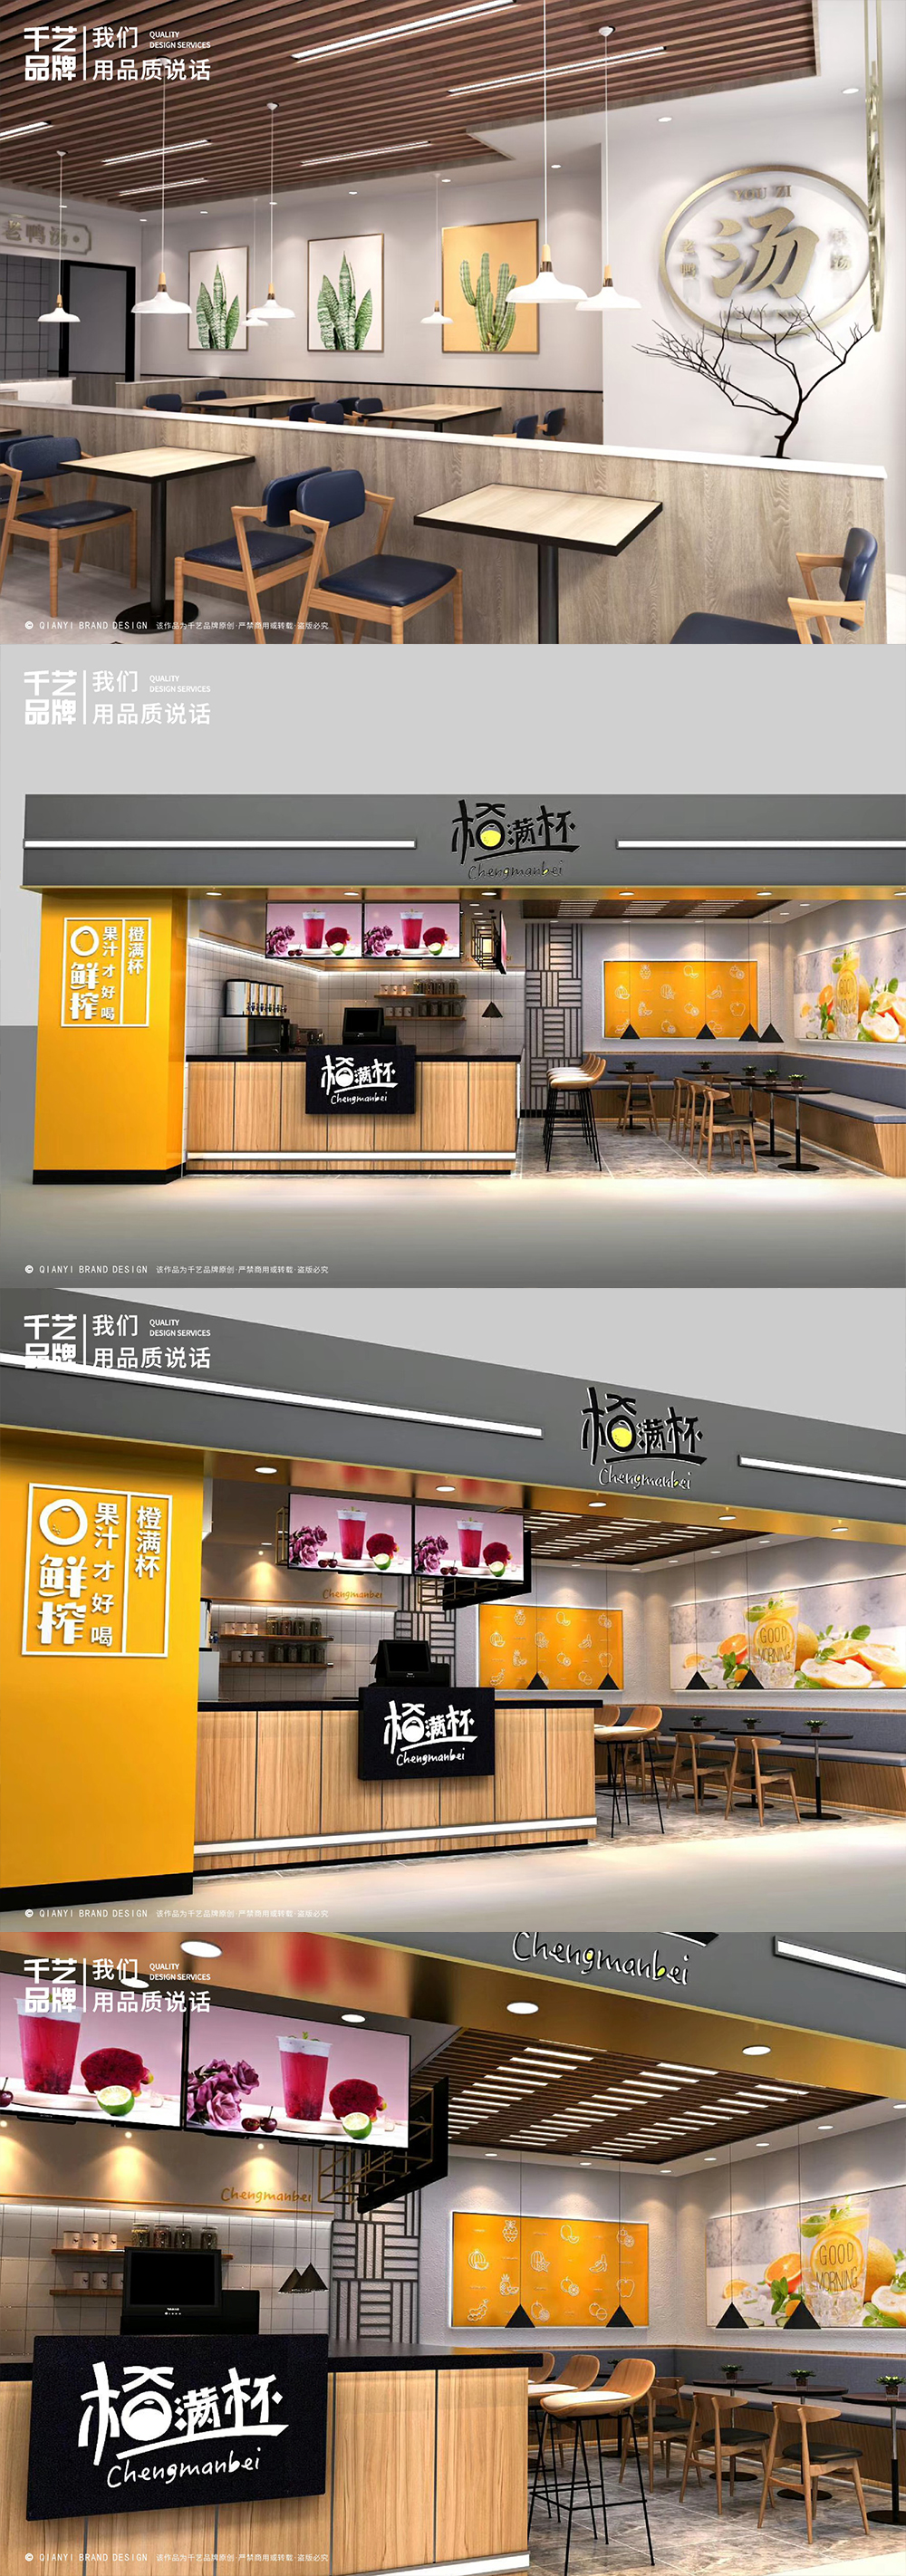 餐饮店铺公装设计展台展厅办公室效果图公装si空间设计